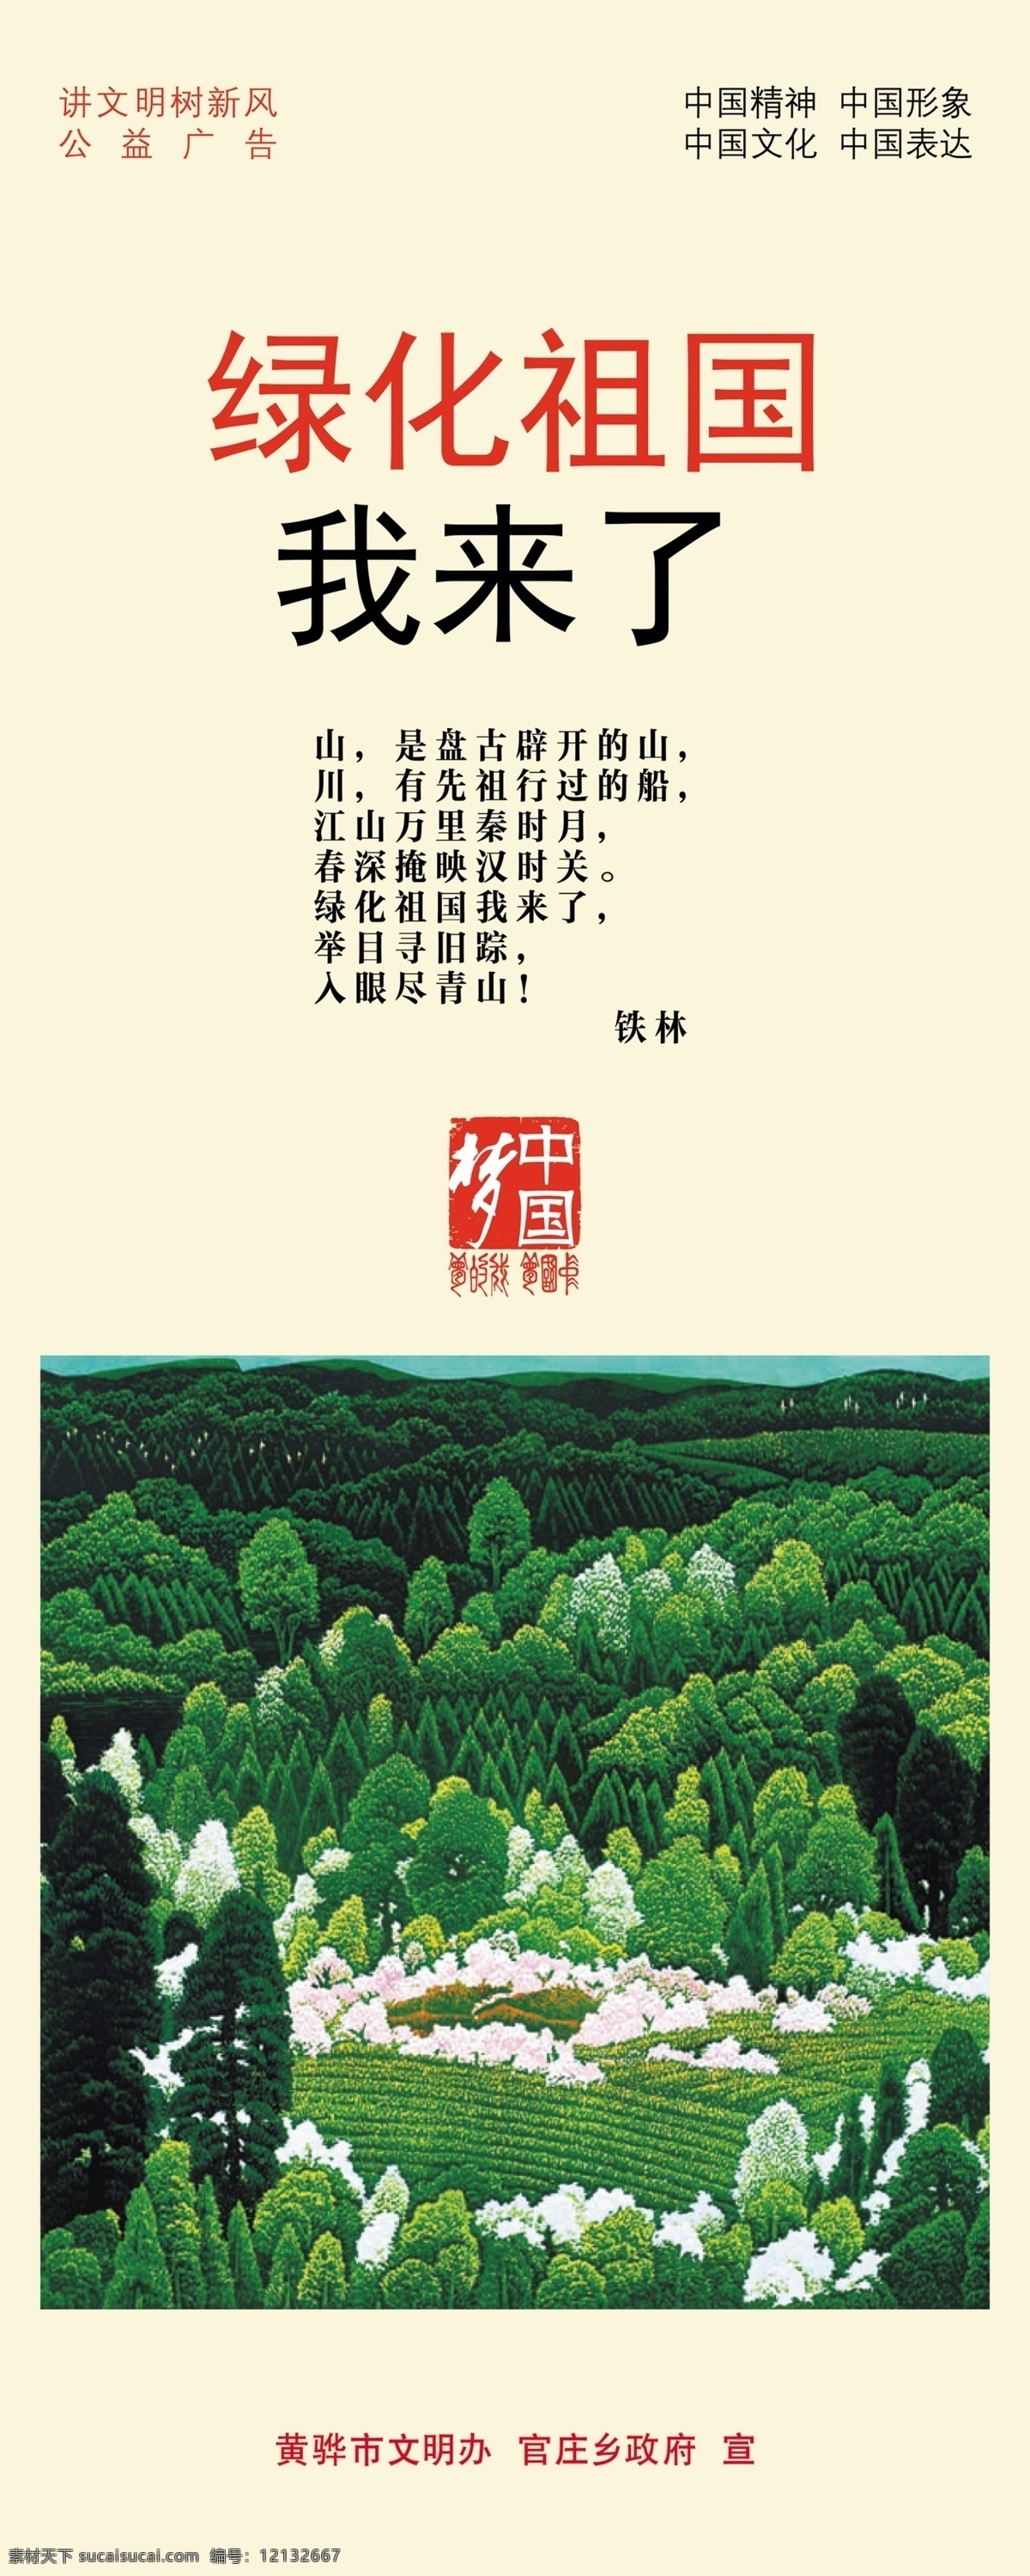 绿化祖国 社会主义好 灯杆旗 宣传 文化 传统中华